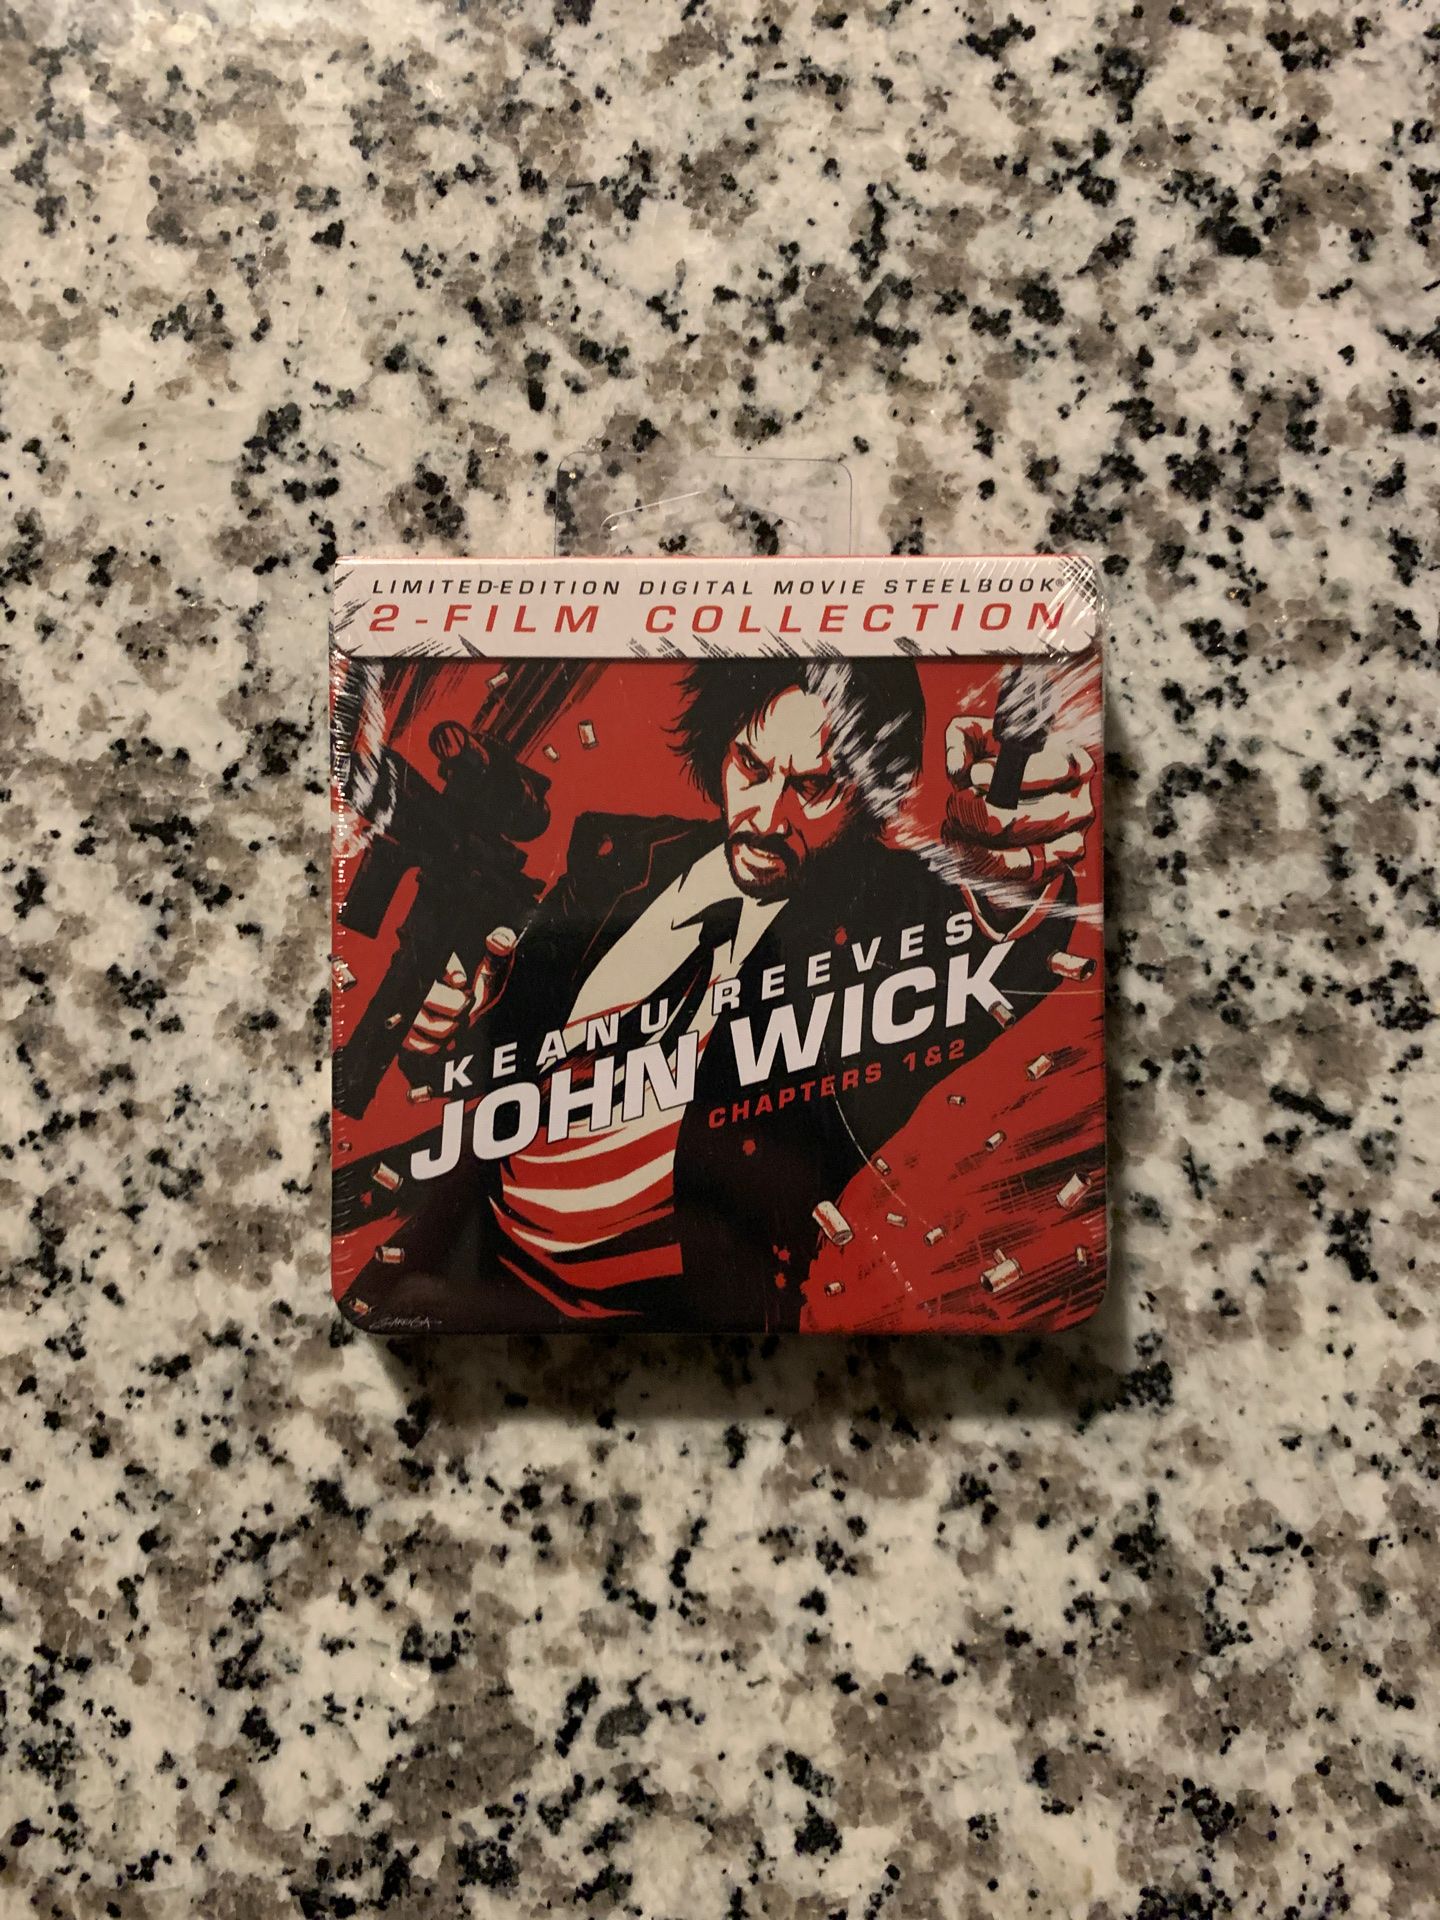 John wick mini steelbook